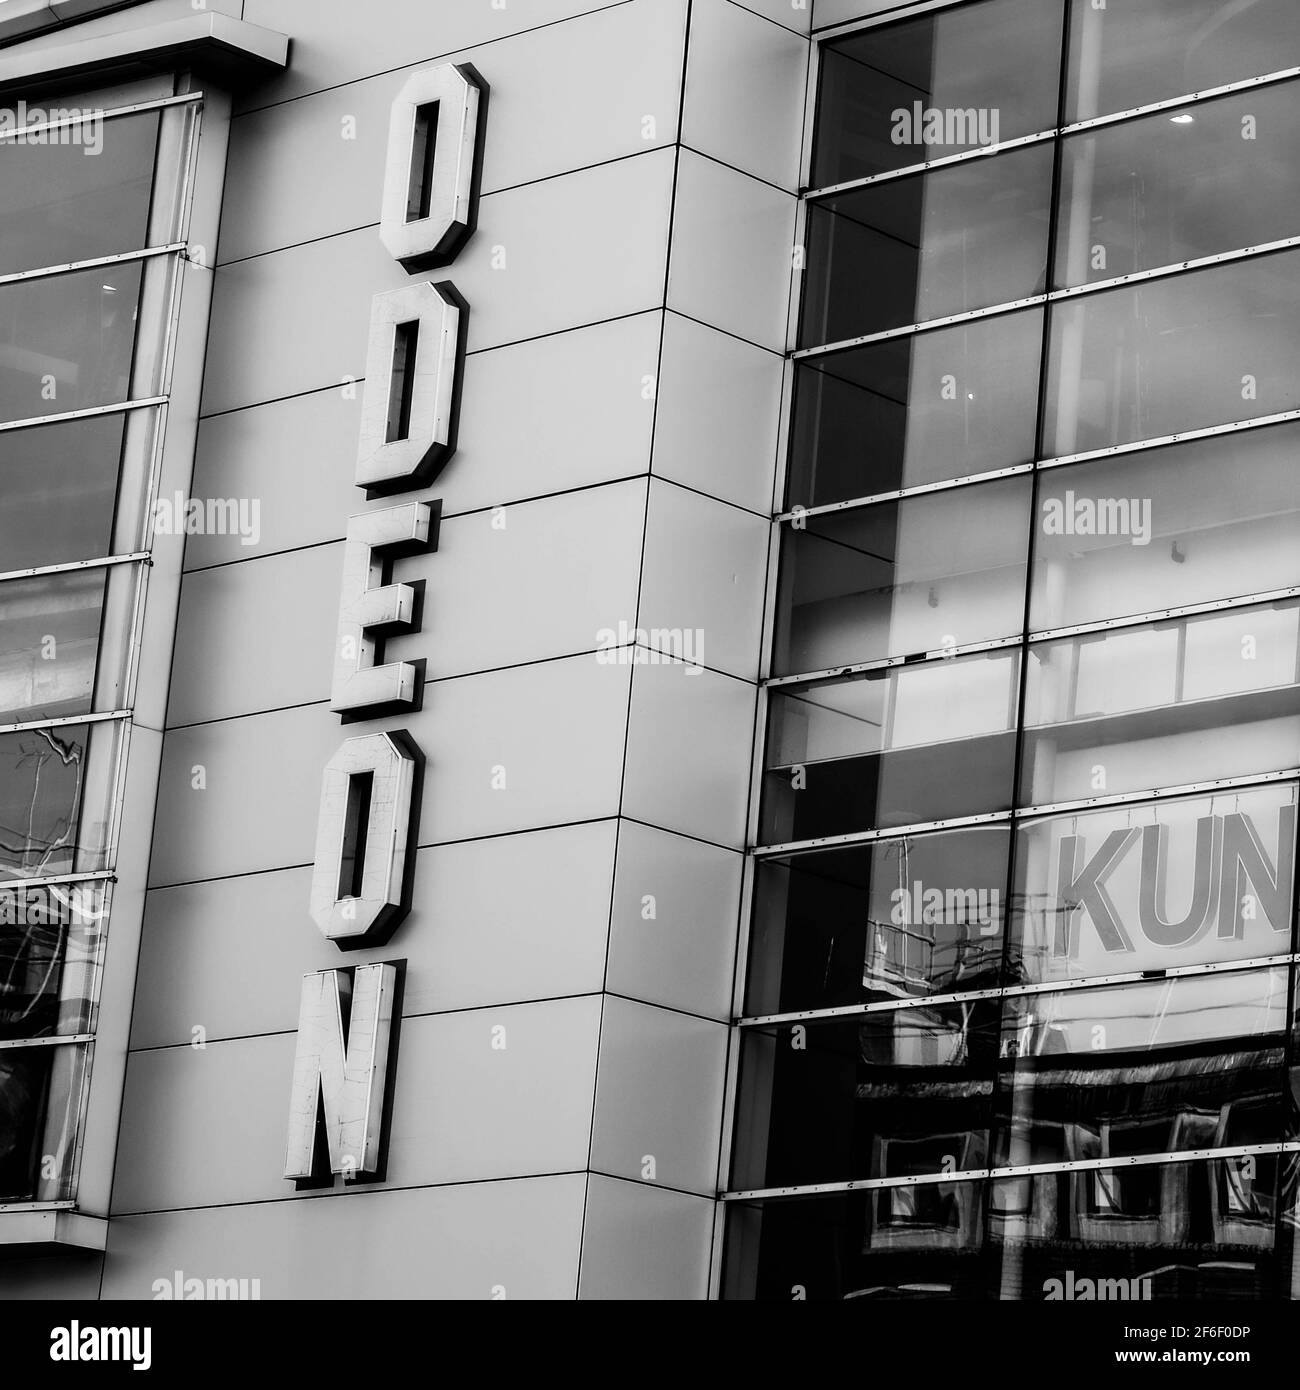 Immagine in bianco e nero di un Odeon Cinema Entertainment Center Chiuso durante il Covid-19 Coronavirus Pandemic Lockdown Foto Stock